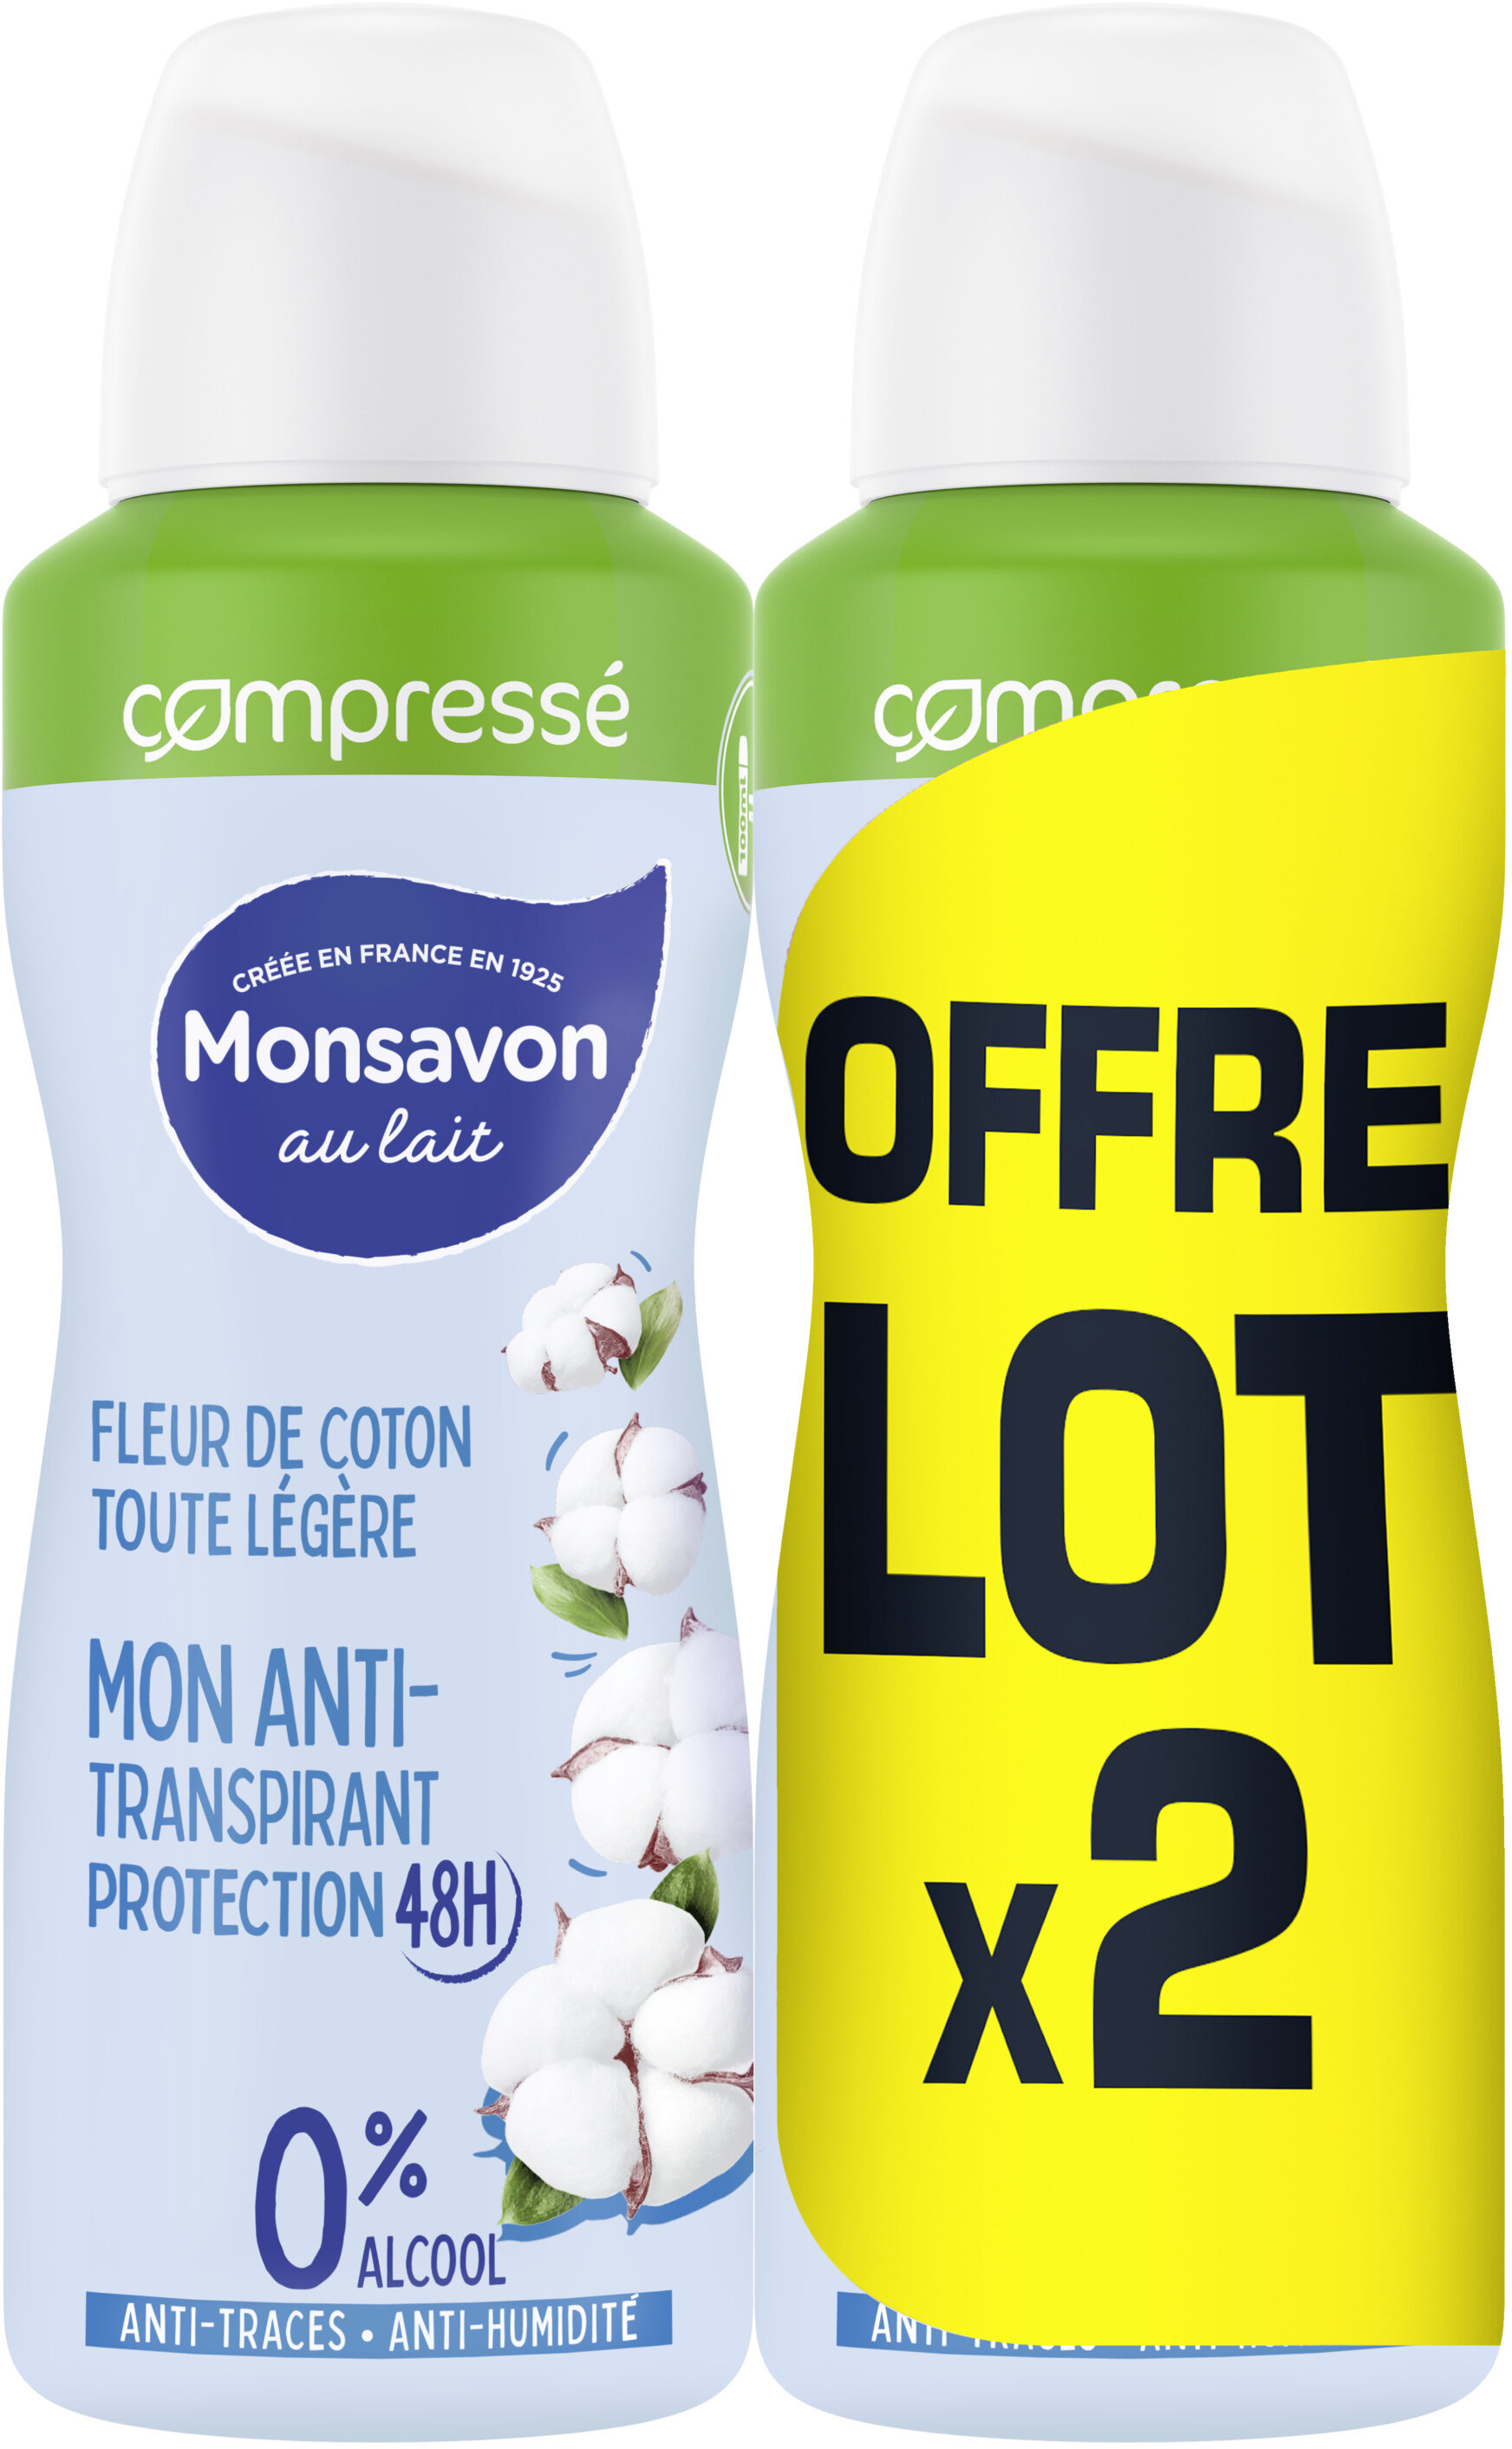 Monsavon Anti-Transpirant Femme Spray Compressé Fleur de Coton Toute Légère 2x100ml - Product - fr